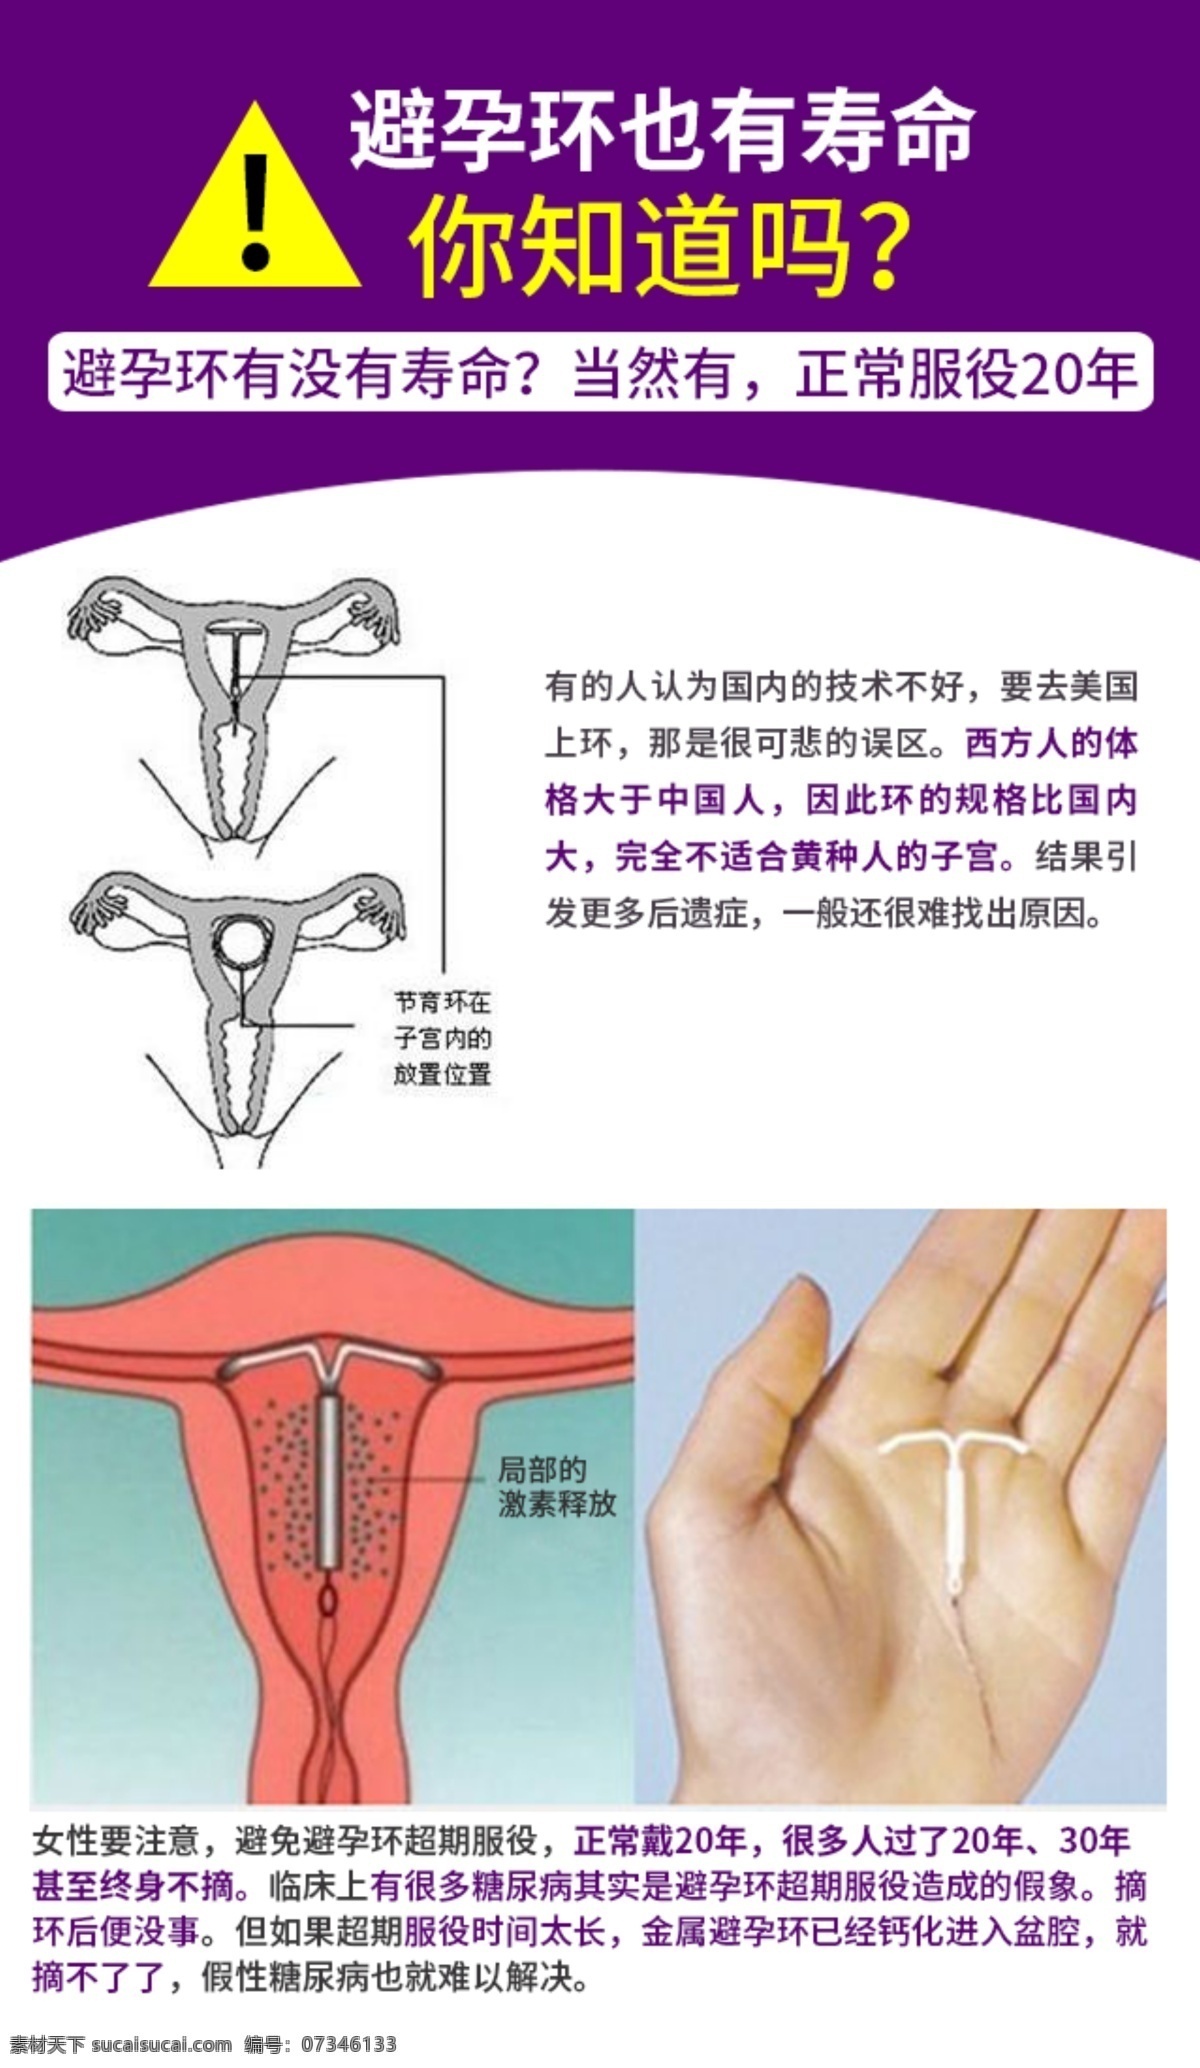 避孕环 寿命 知道 女性避孕 女性健康 避孕环寿命 海报 分层